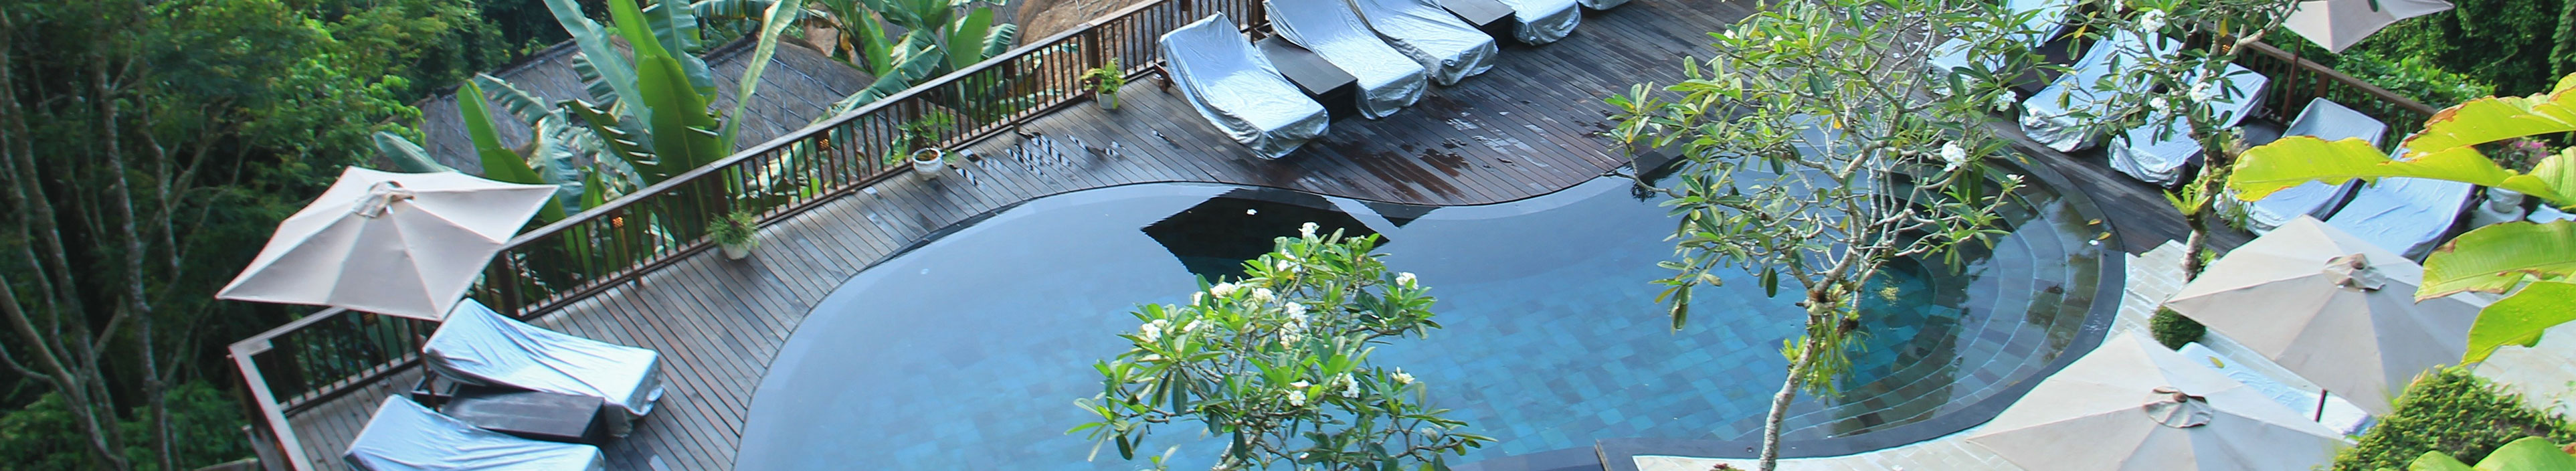 Hotel im Dschungel von Bali, Pool und Liegestühle.